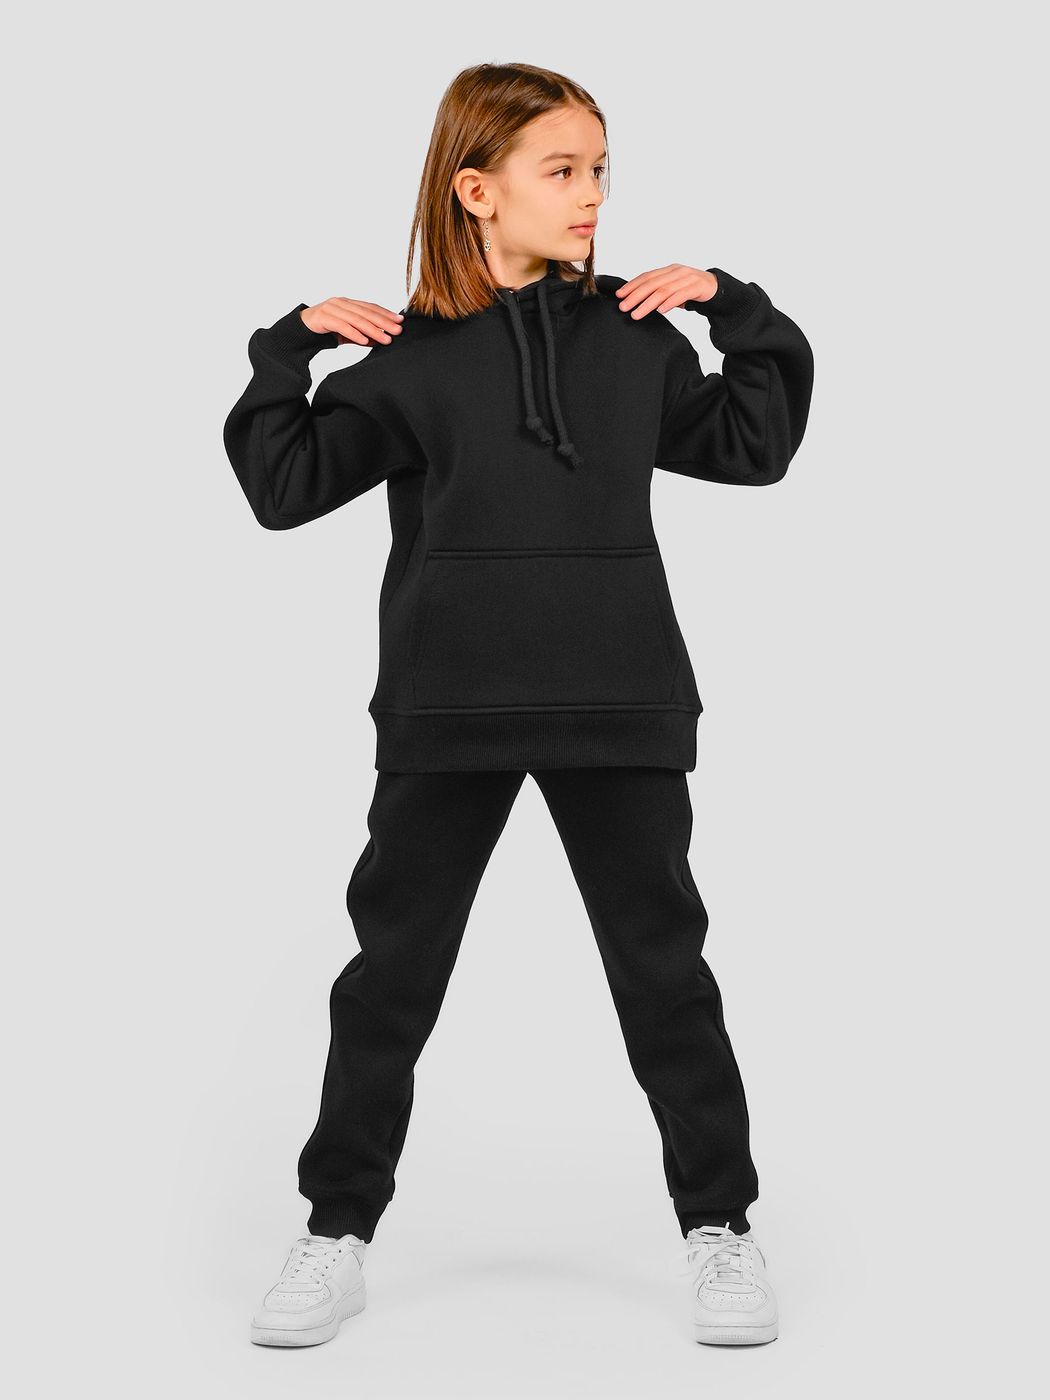 Костюм детский худи и штаны чорный, Черный, 3XS (86-92 см), 92